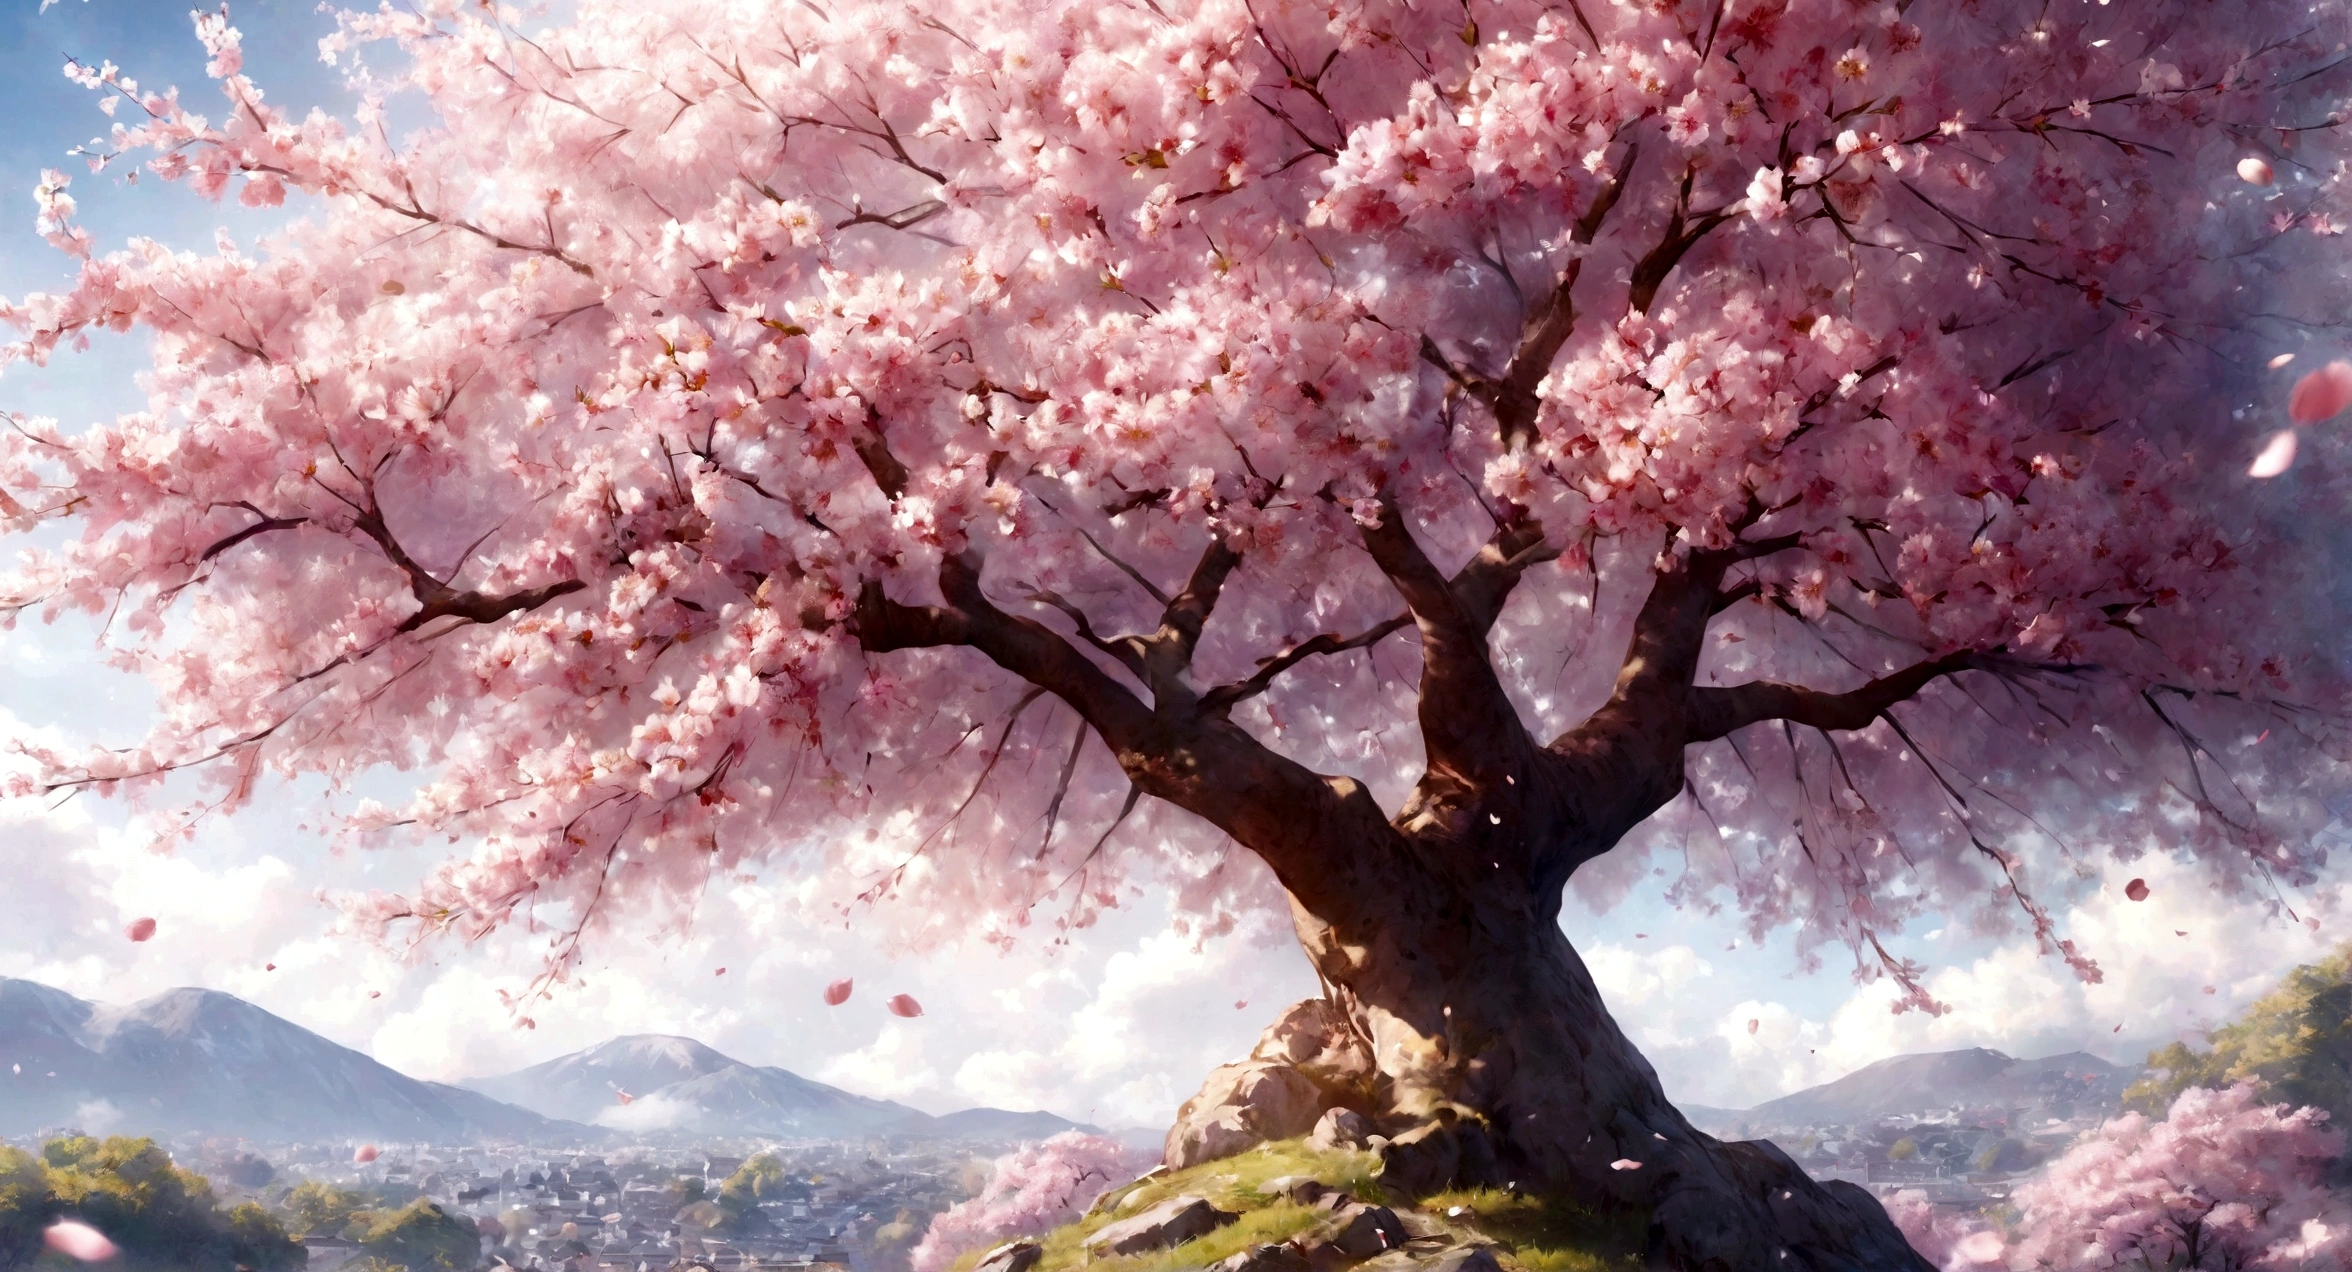 mejor calidad,4k muy hermoso árbol de sakura, una foto positiva, una foto muy realista, alto detalle,foto r3al,